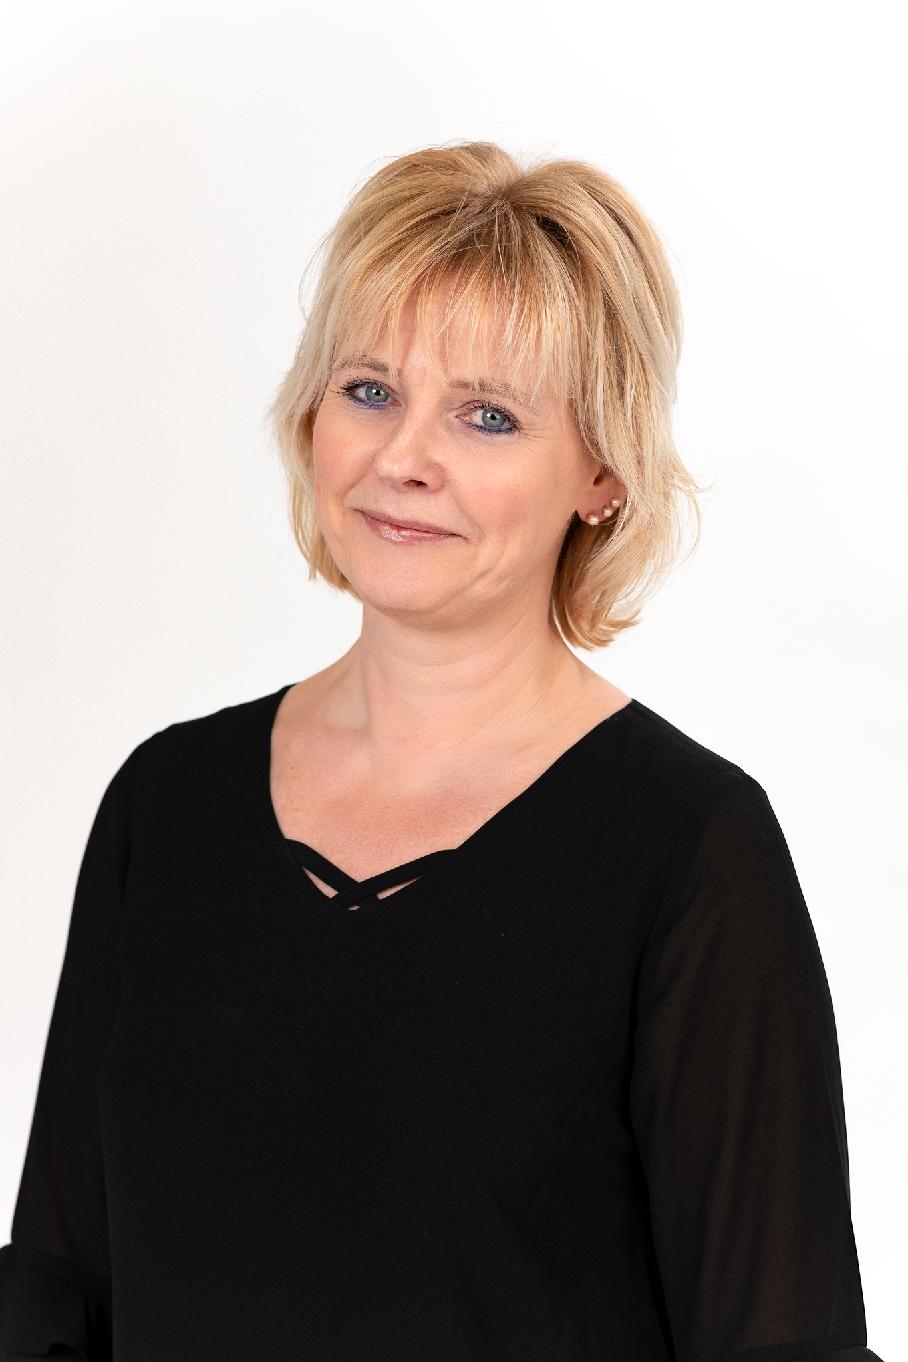 Carola Nordlund Veroasiantuntija lakipalvelut OP Raasepori yhteystiedot skattesakkunnig juridiska tjänster OP Raseborg kontaktuppgifter